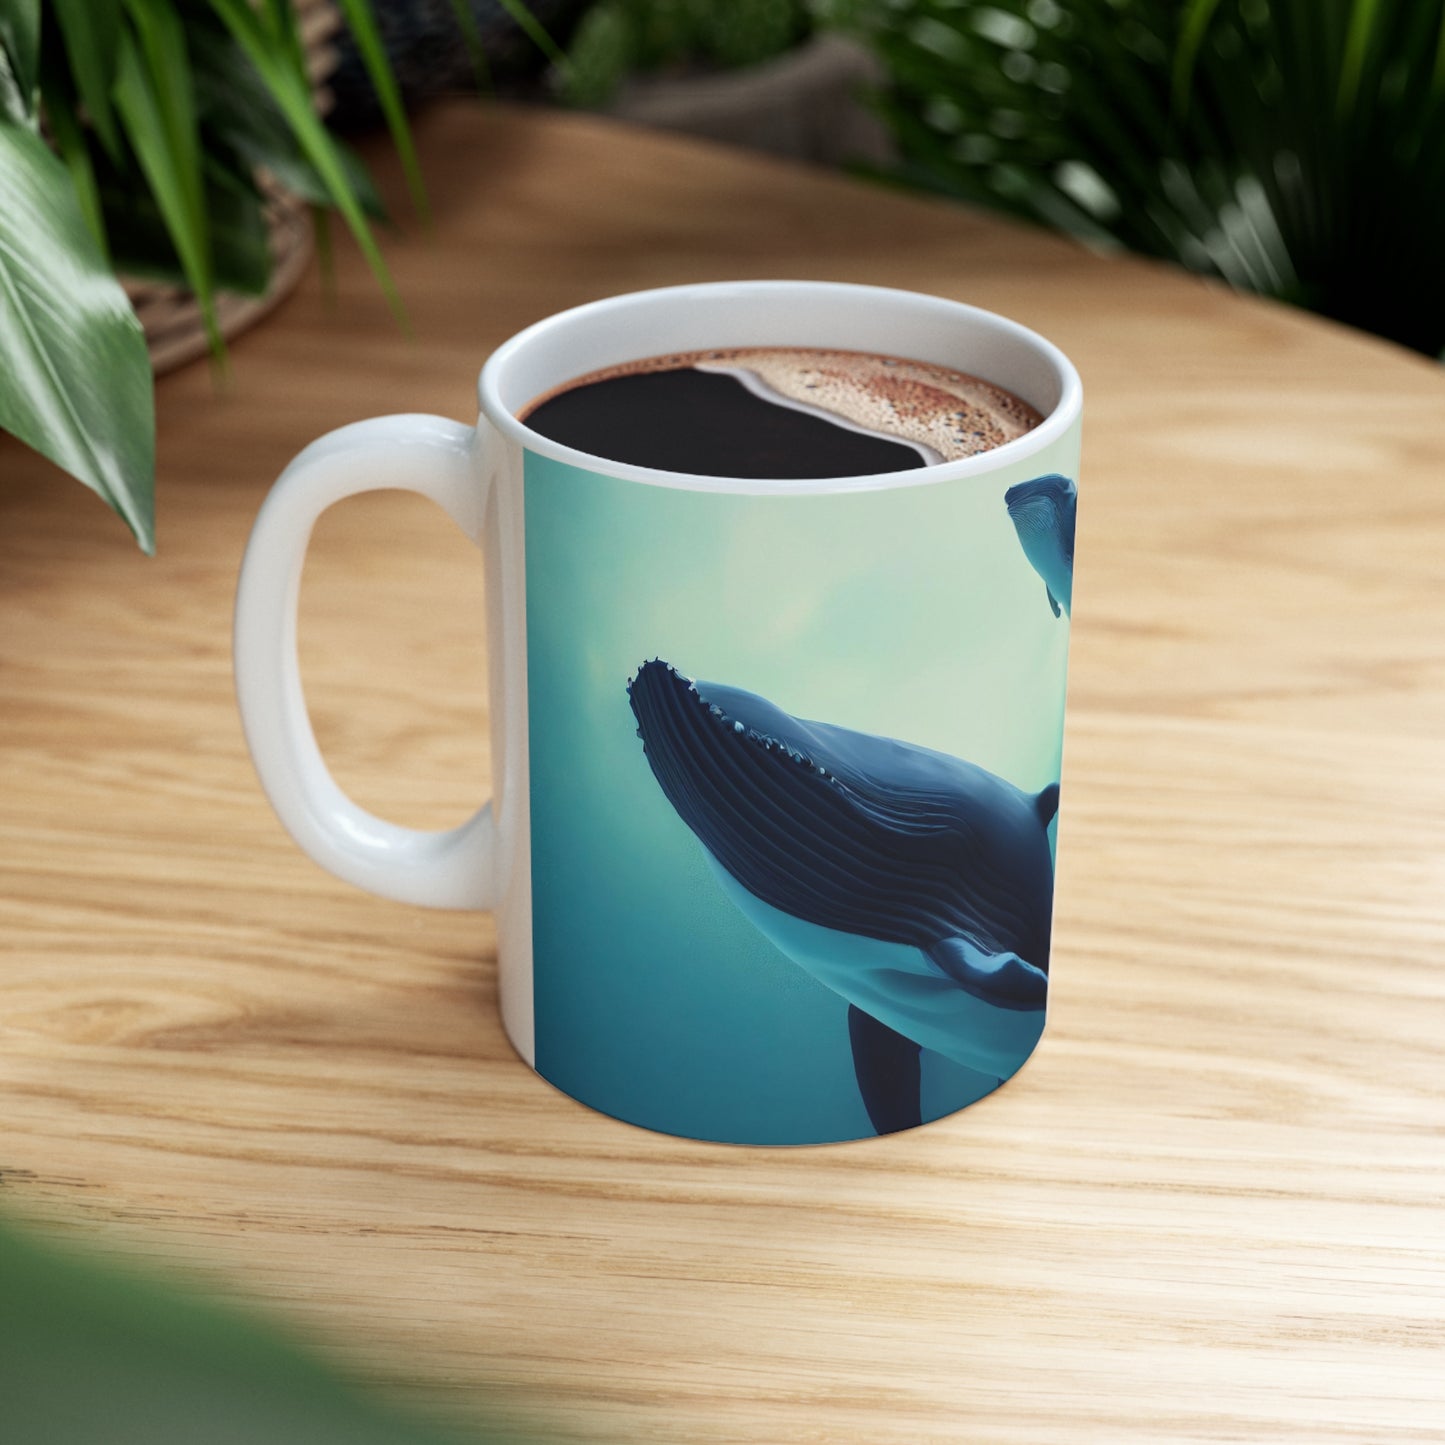 Group of blue whales - Ceramic Mug 11oz